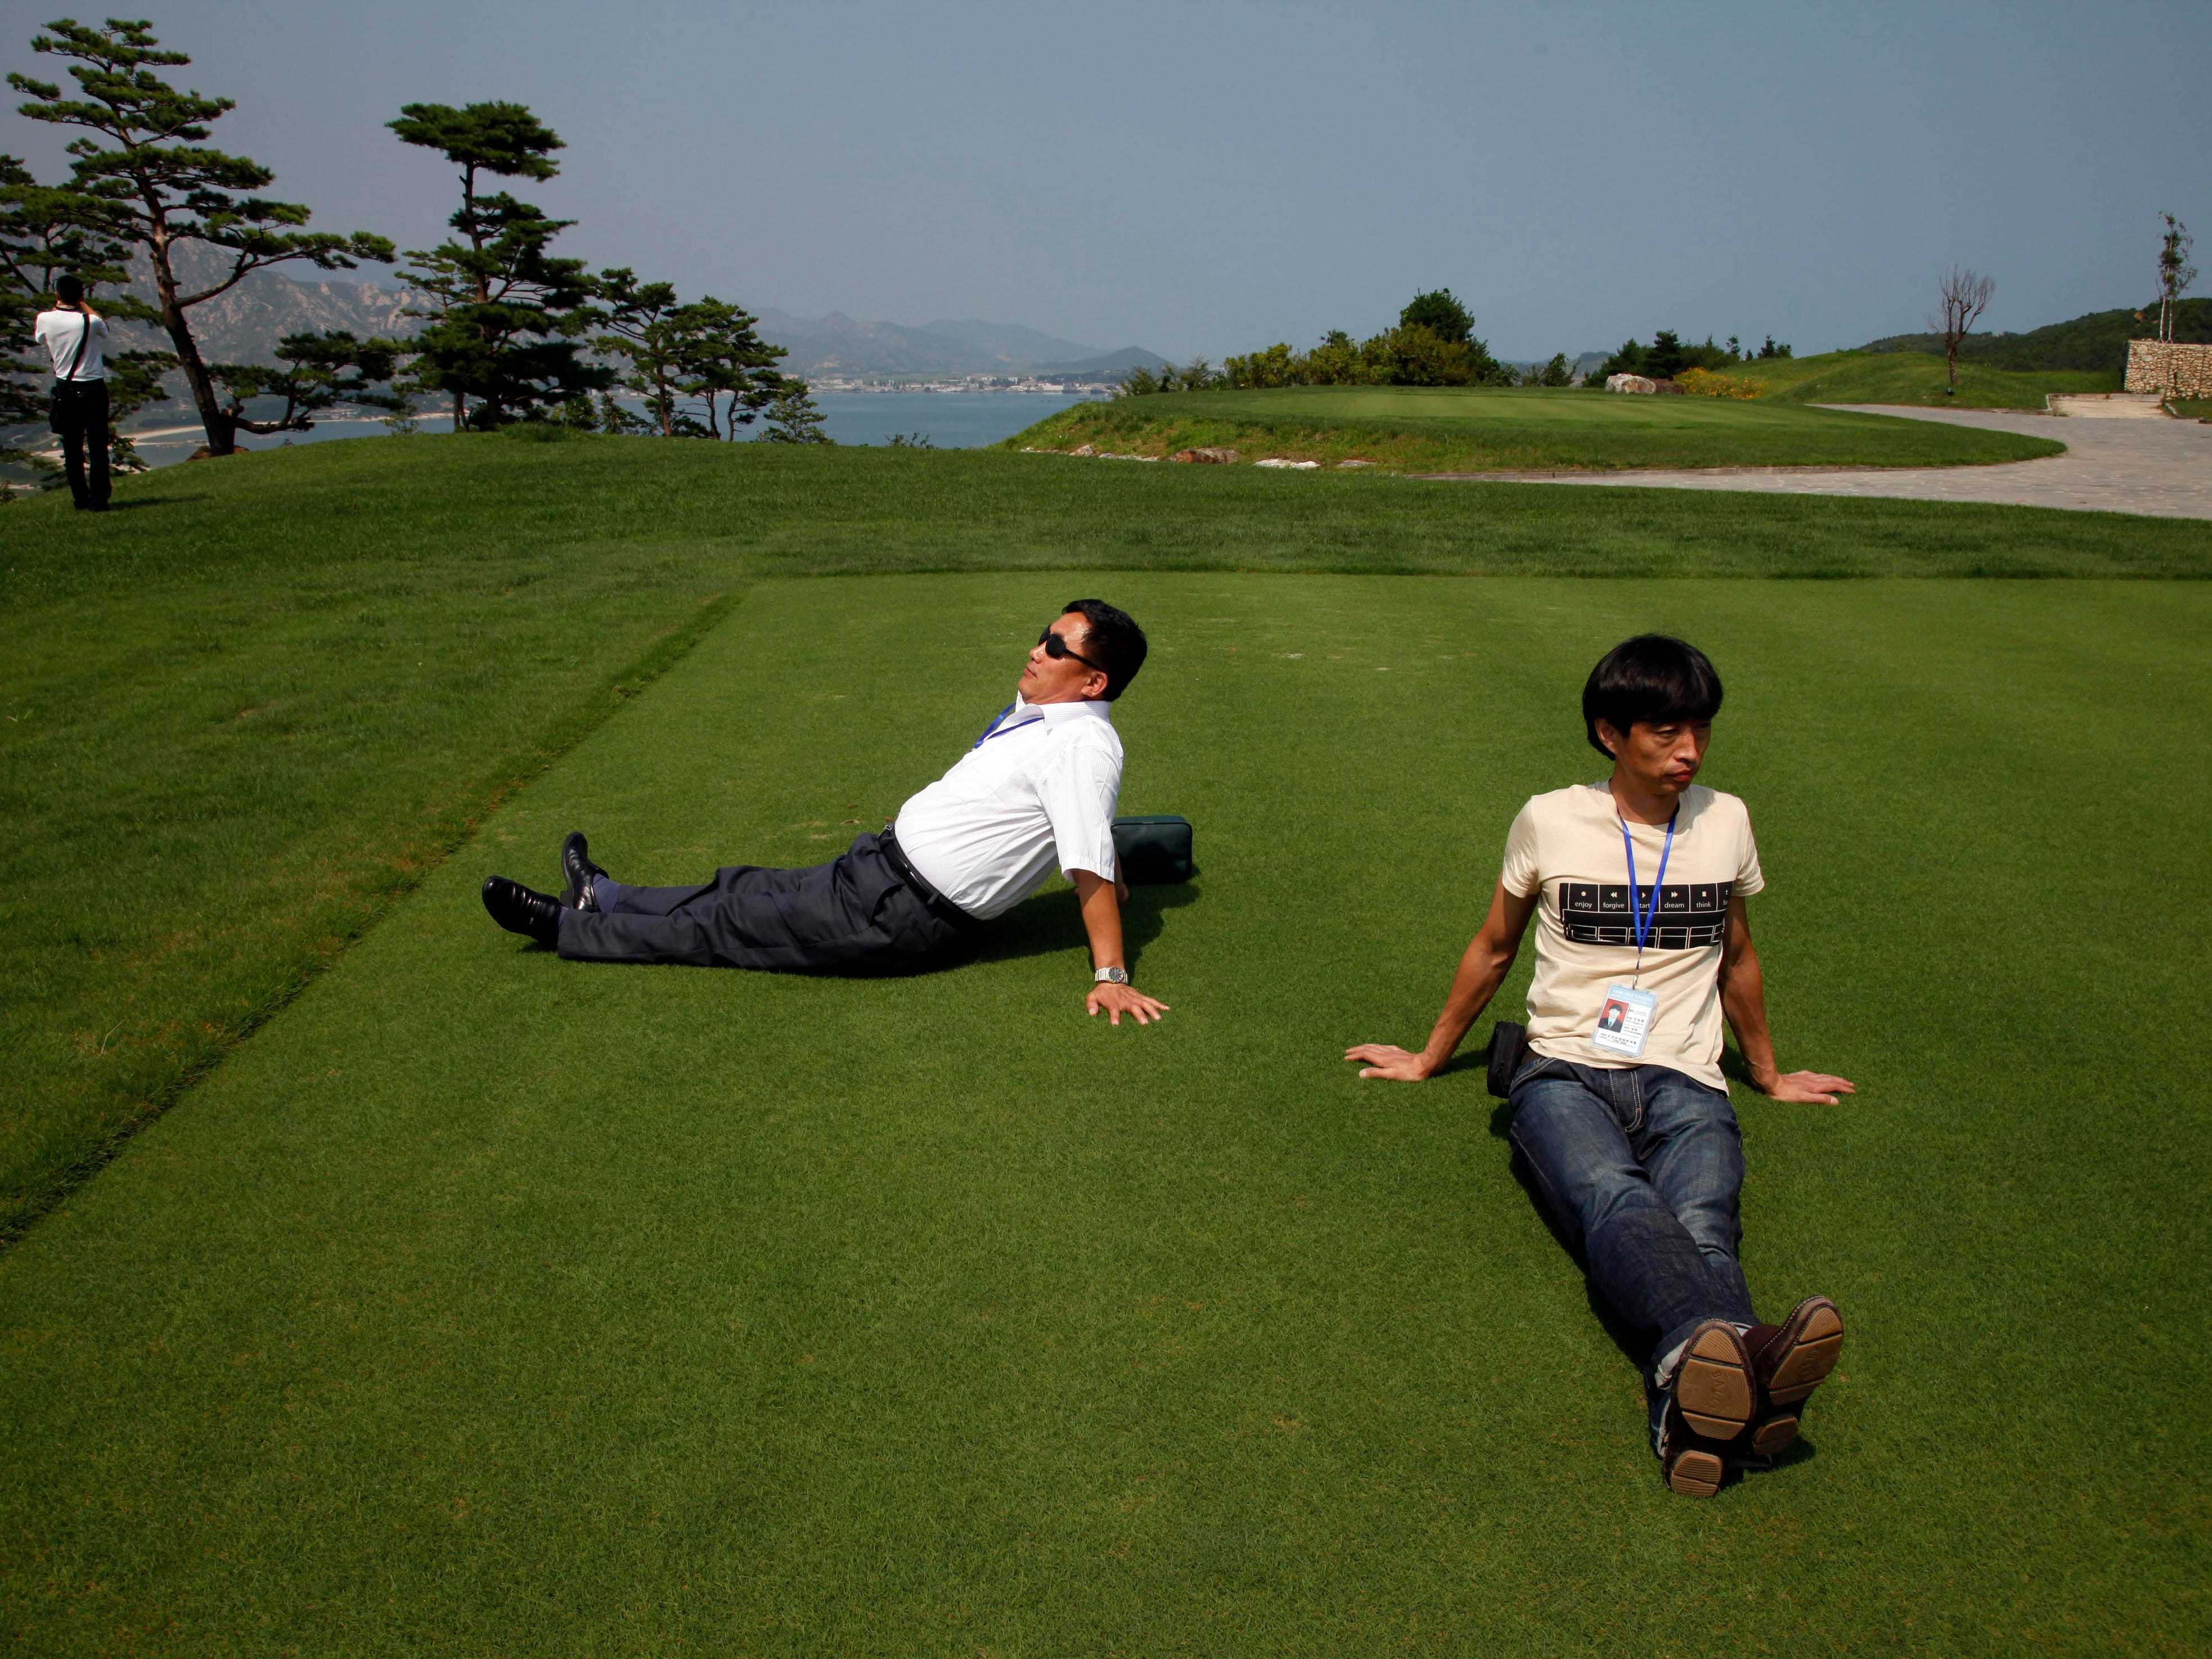 Besucher erfreuen sich am 1. September 2011 am gepflegten Rasen des südkoreanischen Golfplatzes im Mount Kumgang Resort, auch bekannt als Diamond Mountain, in Nordkorea.